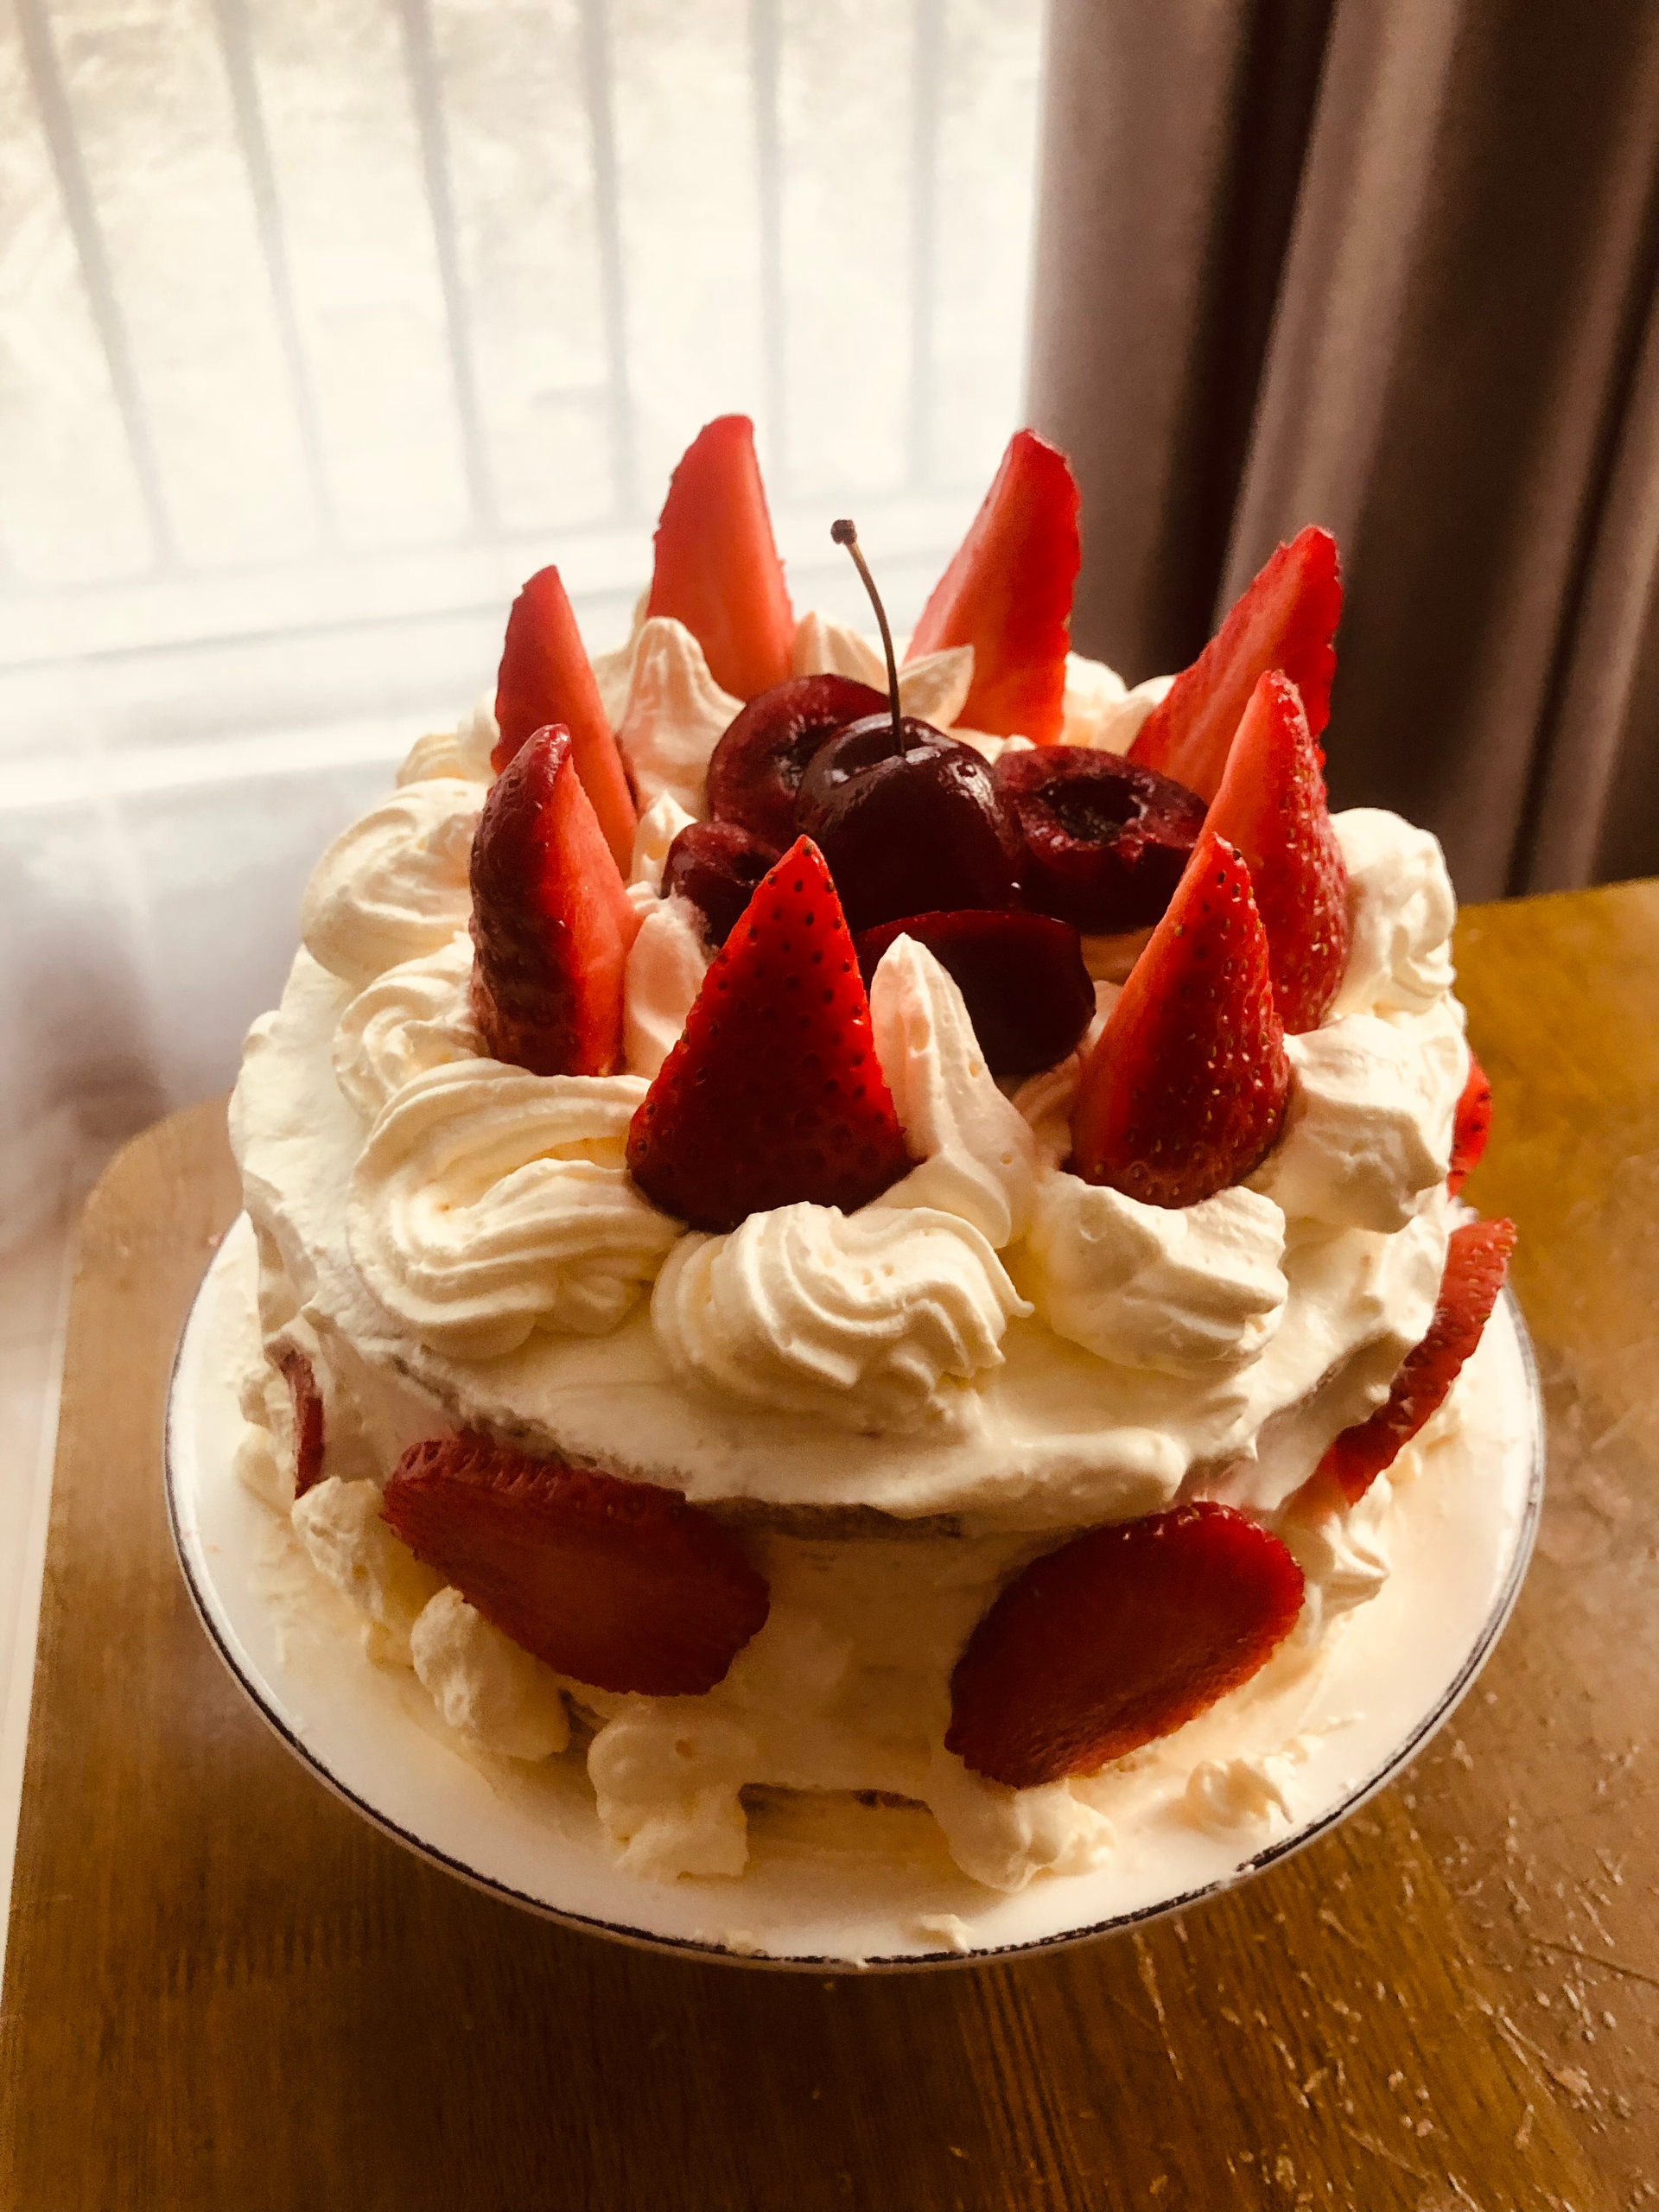 草莓奶油蛋糕